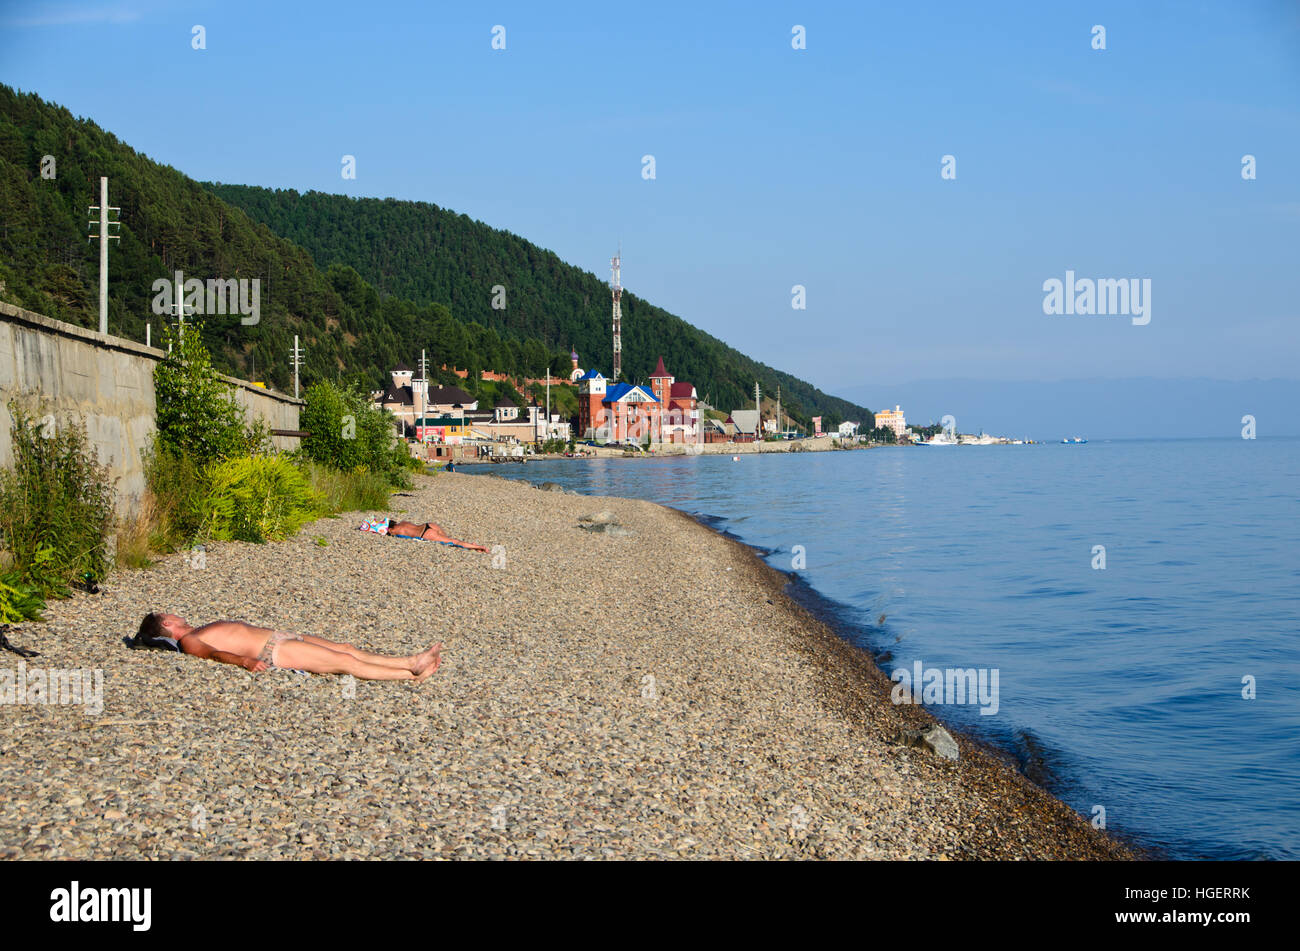 Rocky beach of Lake Baikal Stock Photo